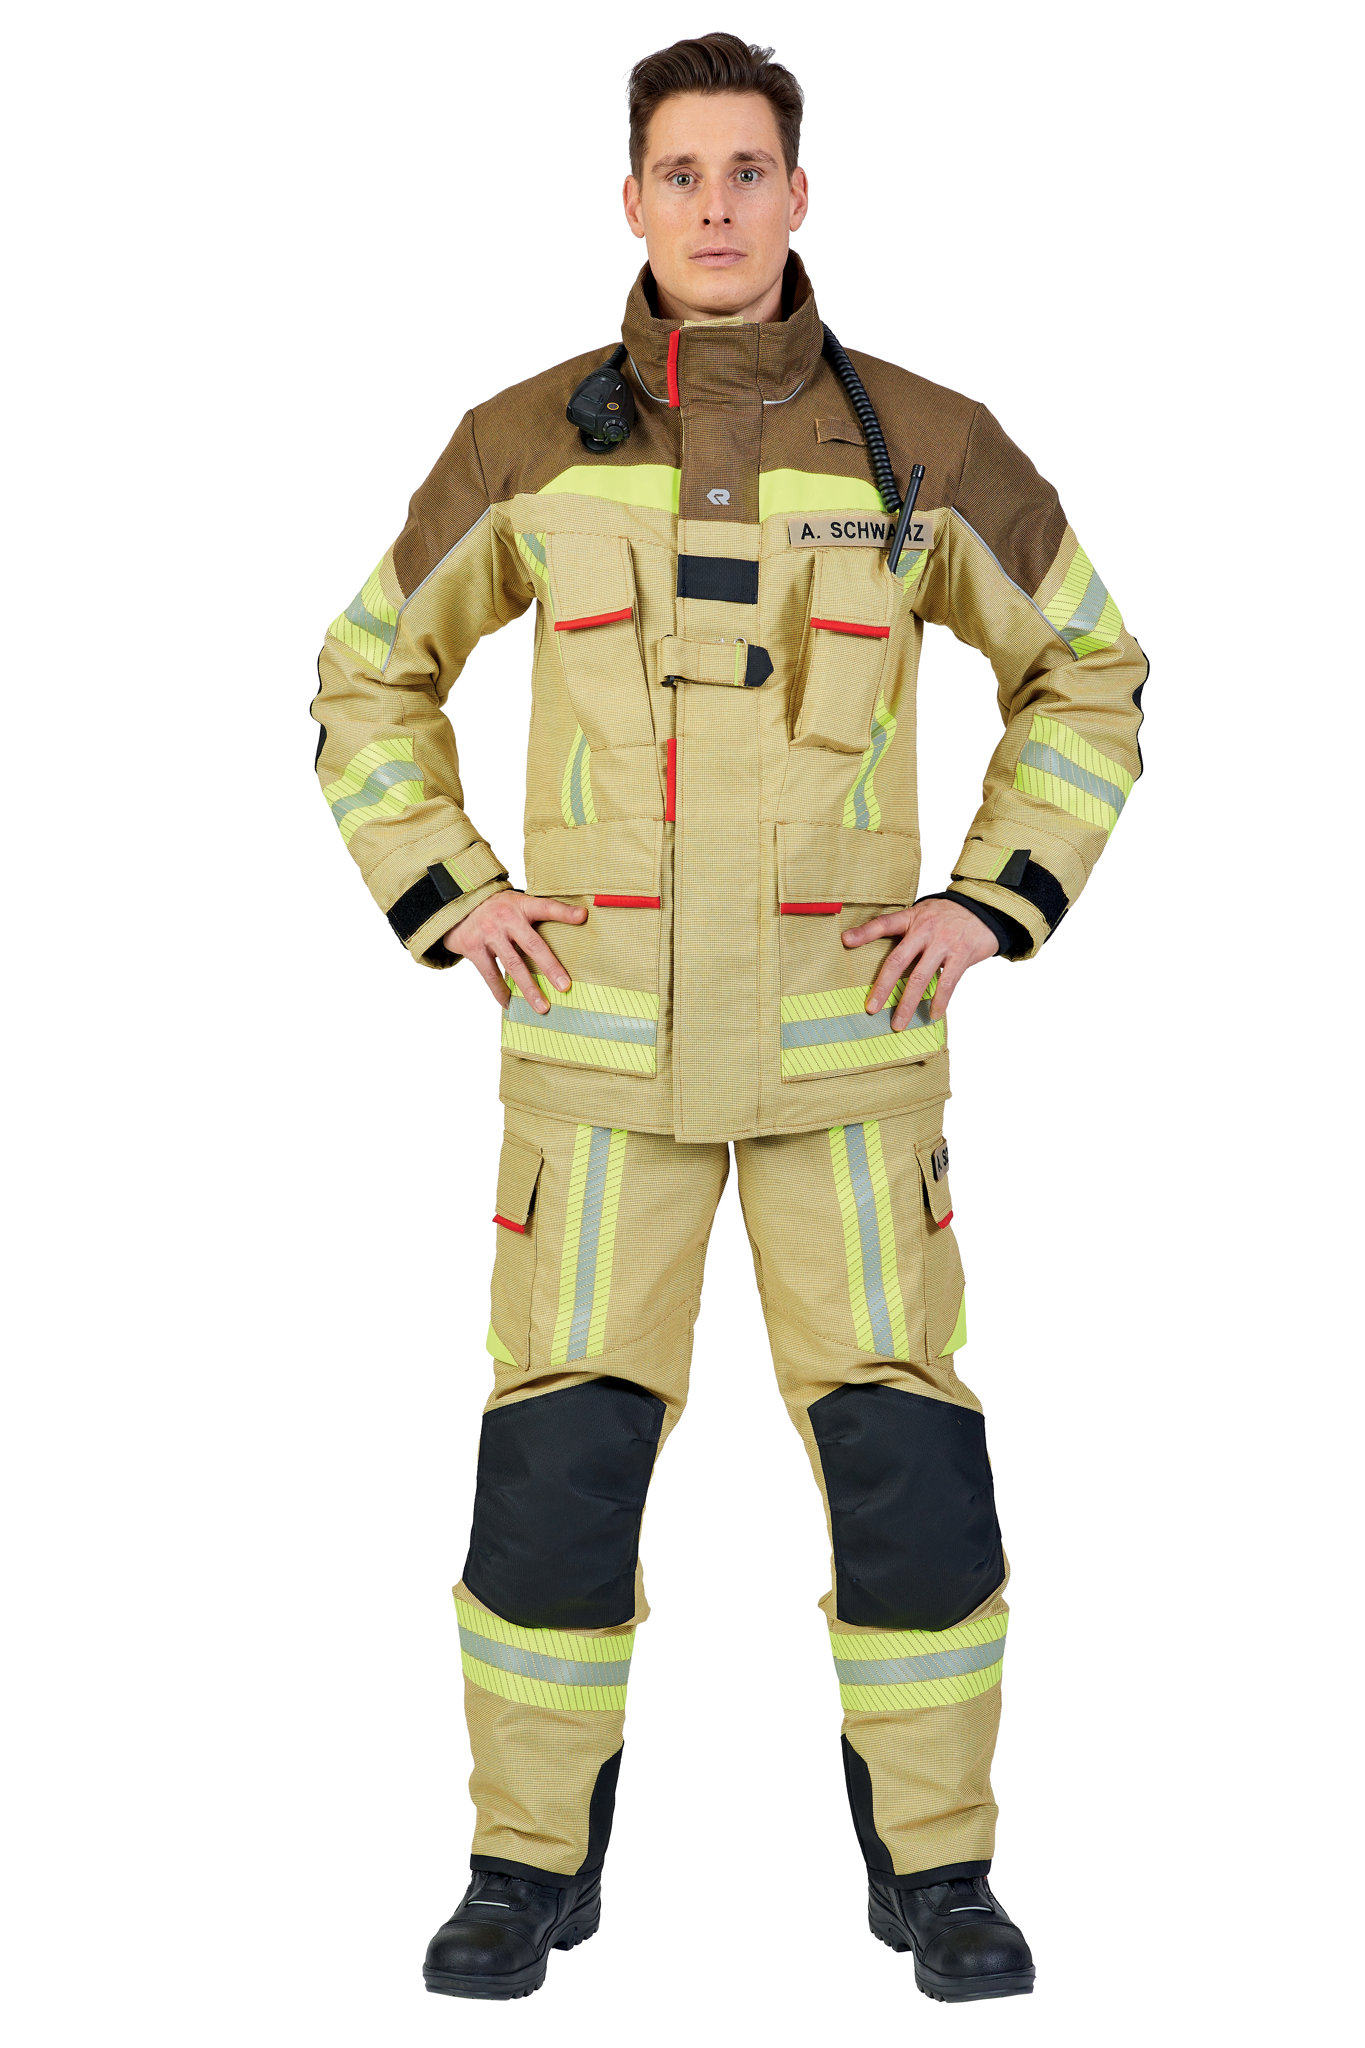 Bild von ROSENBAUER Feuerwehreinsatzjacke FIRE FLEX, X55 MIT PBI, gold/braun, Gr. 40-42 B